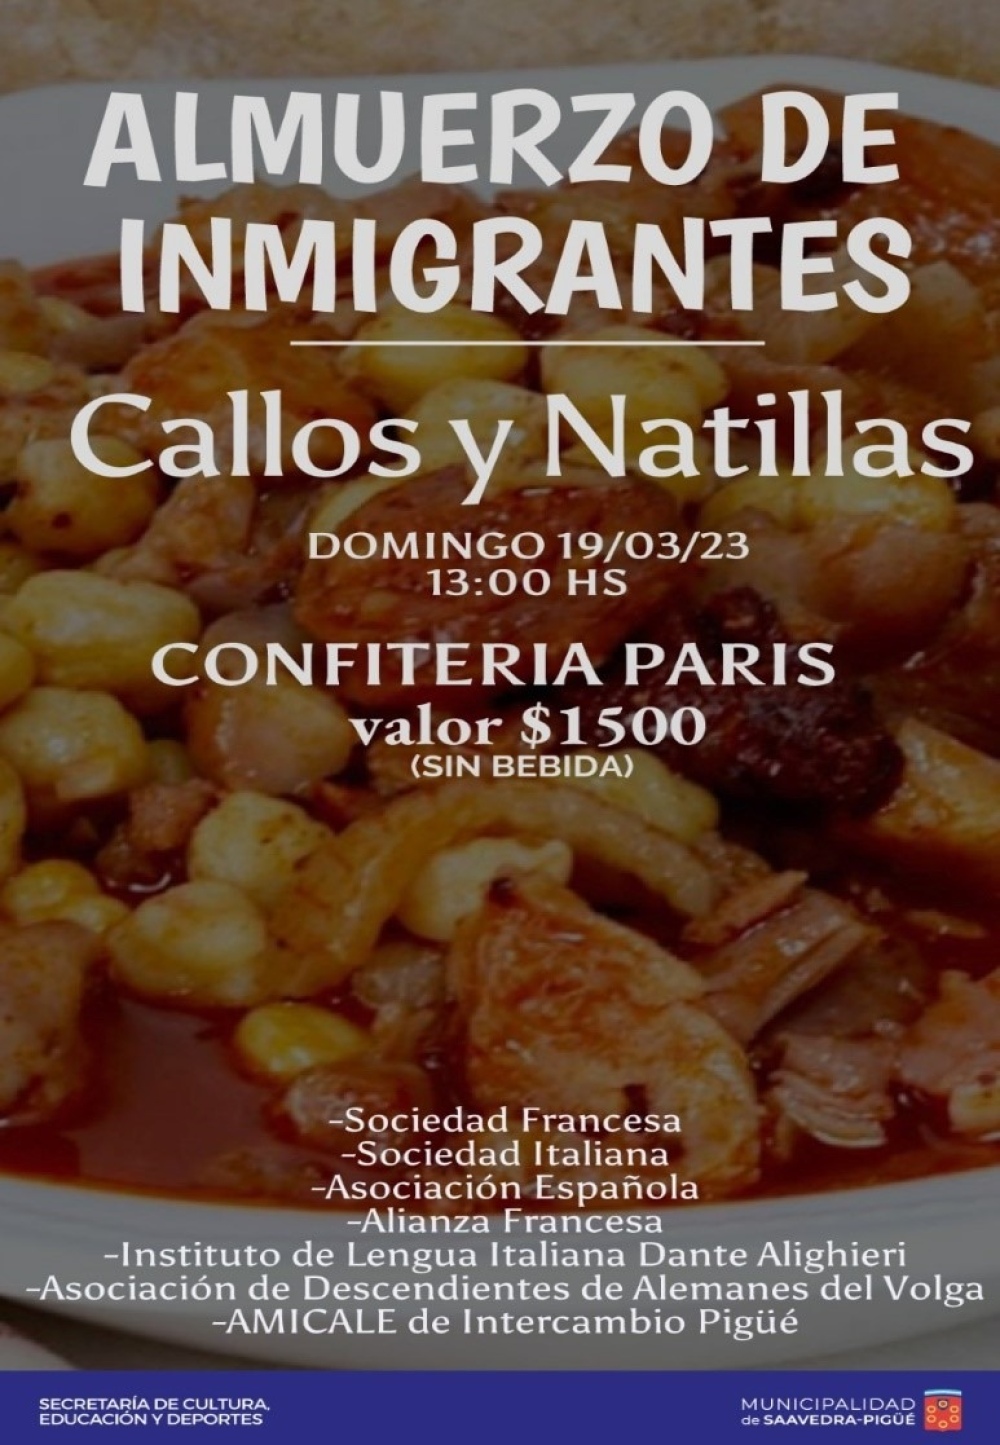 Almuerzo de los inmigrantes con menú español